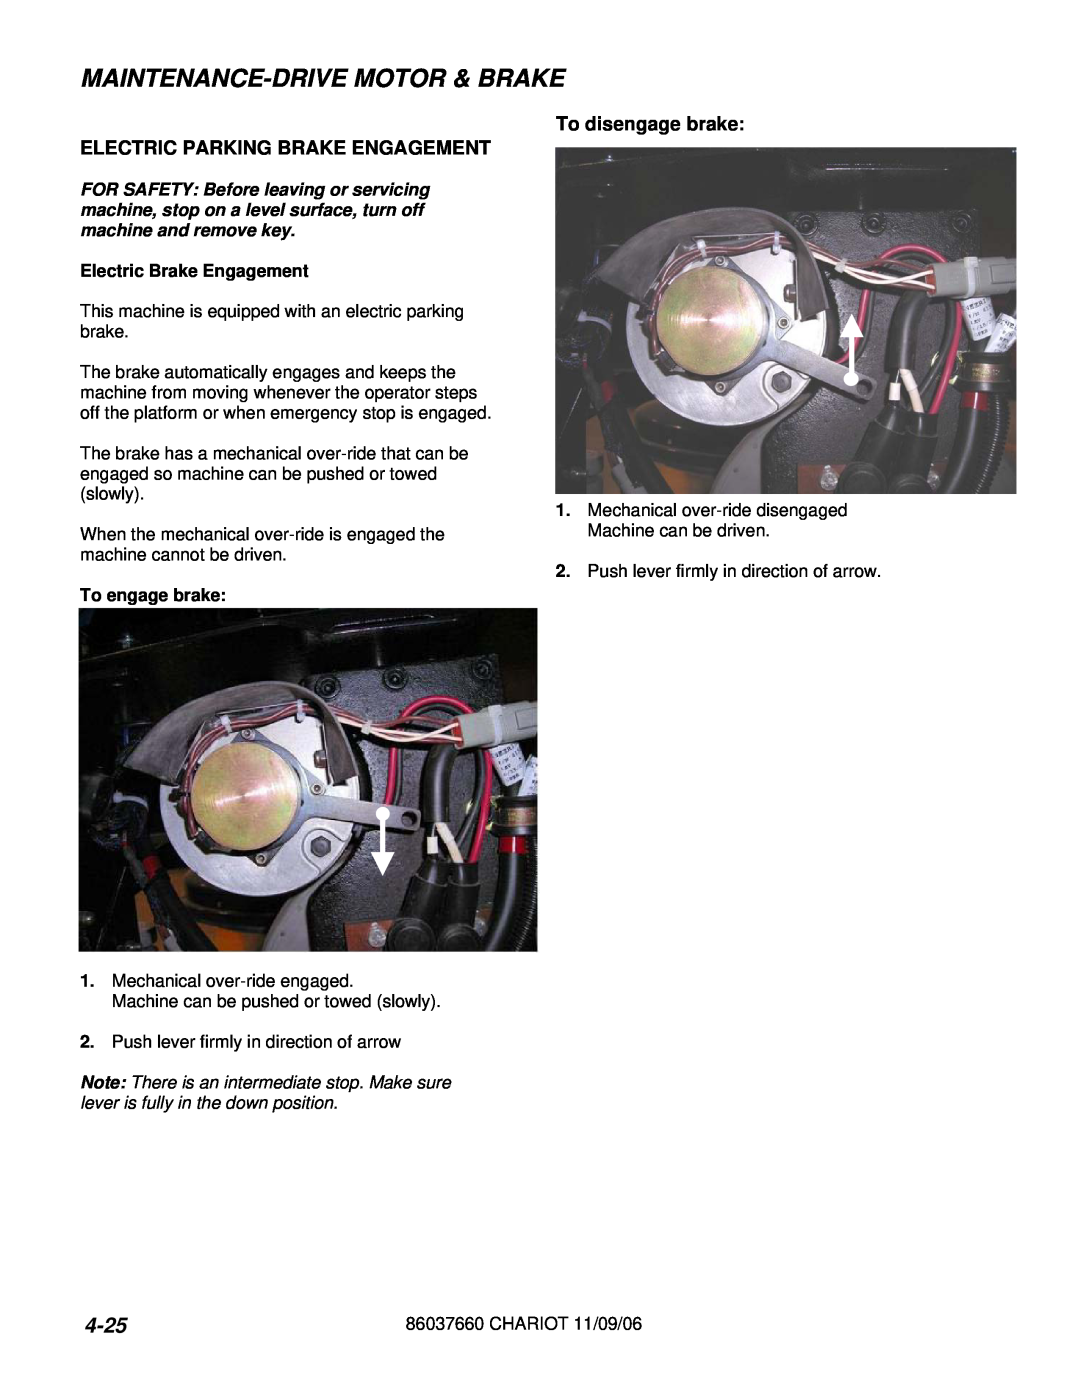 Windsor CSXEO24 10060300 manual 4-25, Maintenance-Drivemotor & Brake, Electric Parking Brake Engagement, To disengage brake 